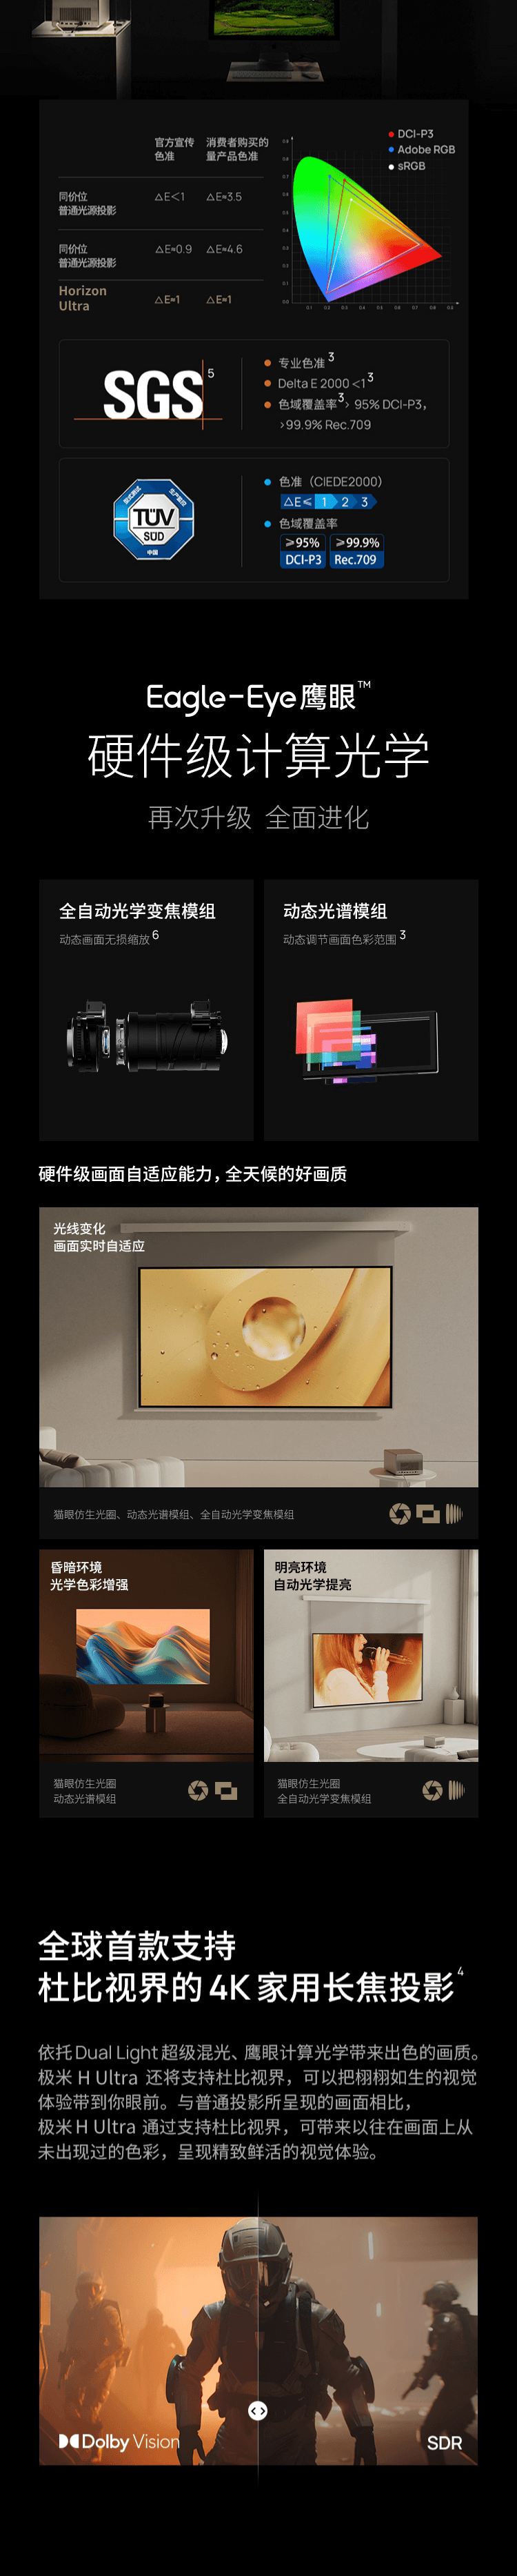 【现货直发】中国极米Horizon Ultra 无损光学4K变焦超高清家用智能投影仪 2300 ISO lumens【加拿大直邮】